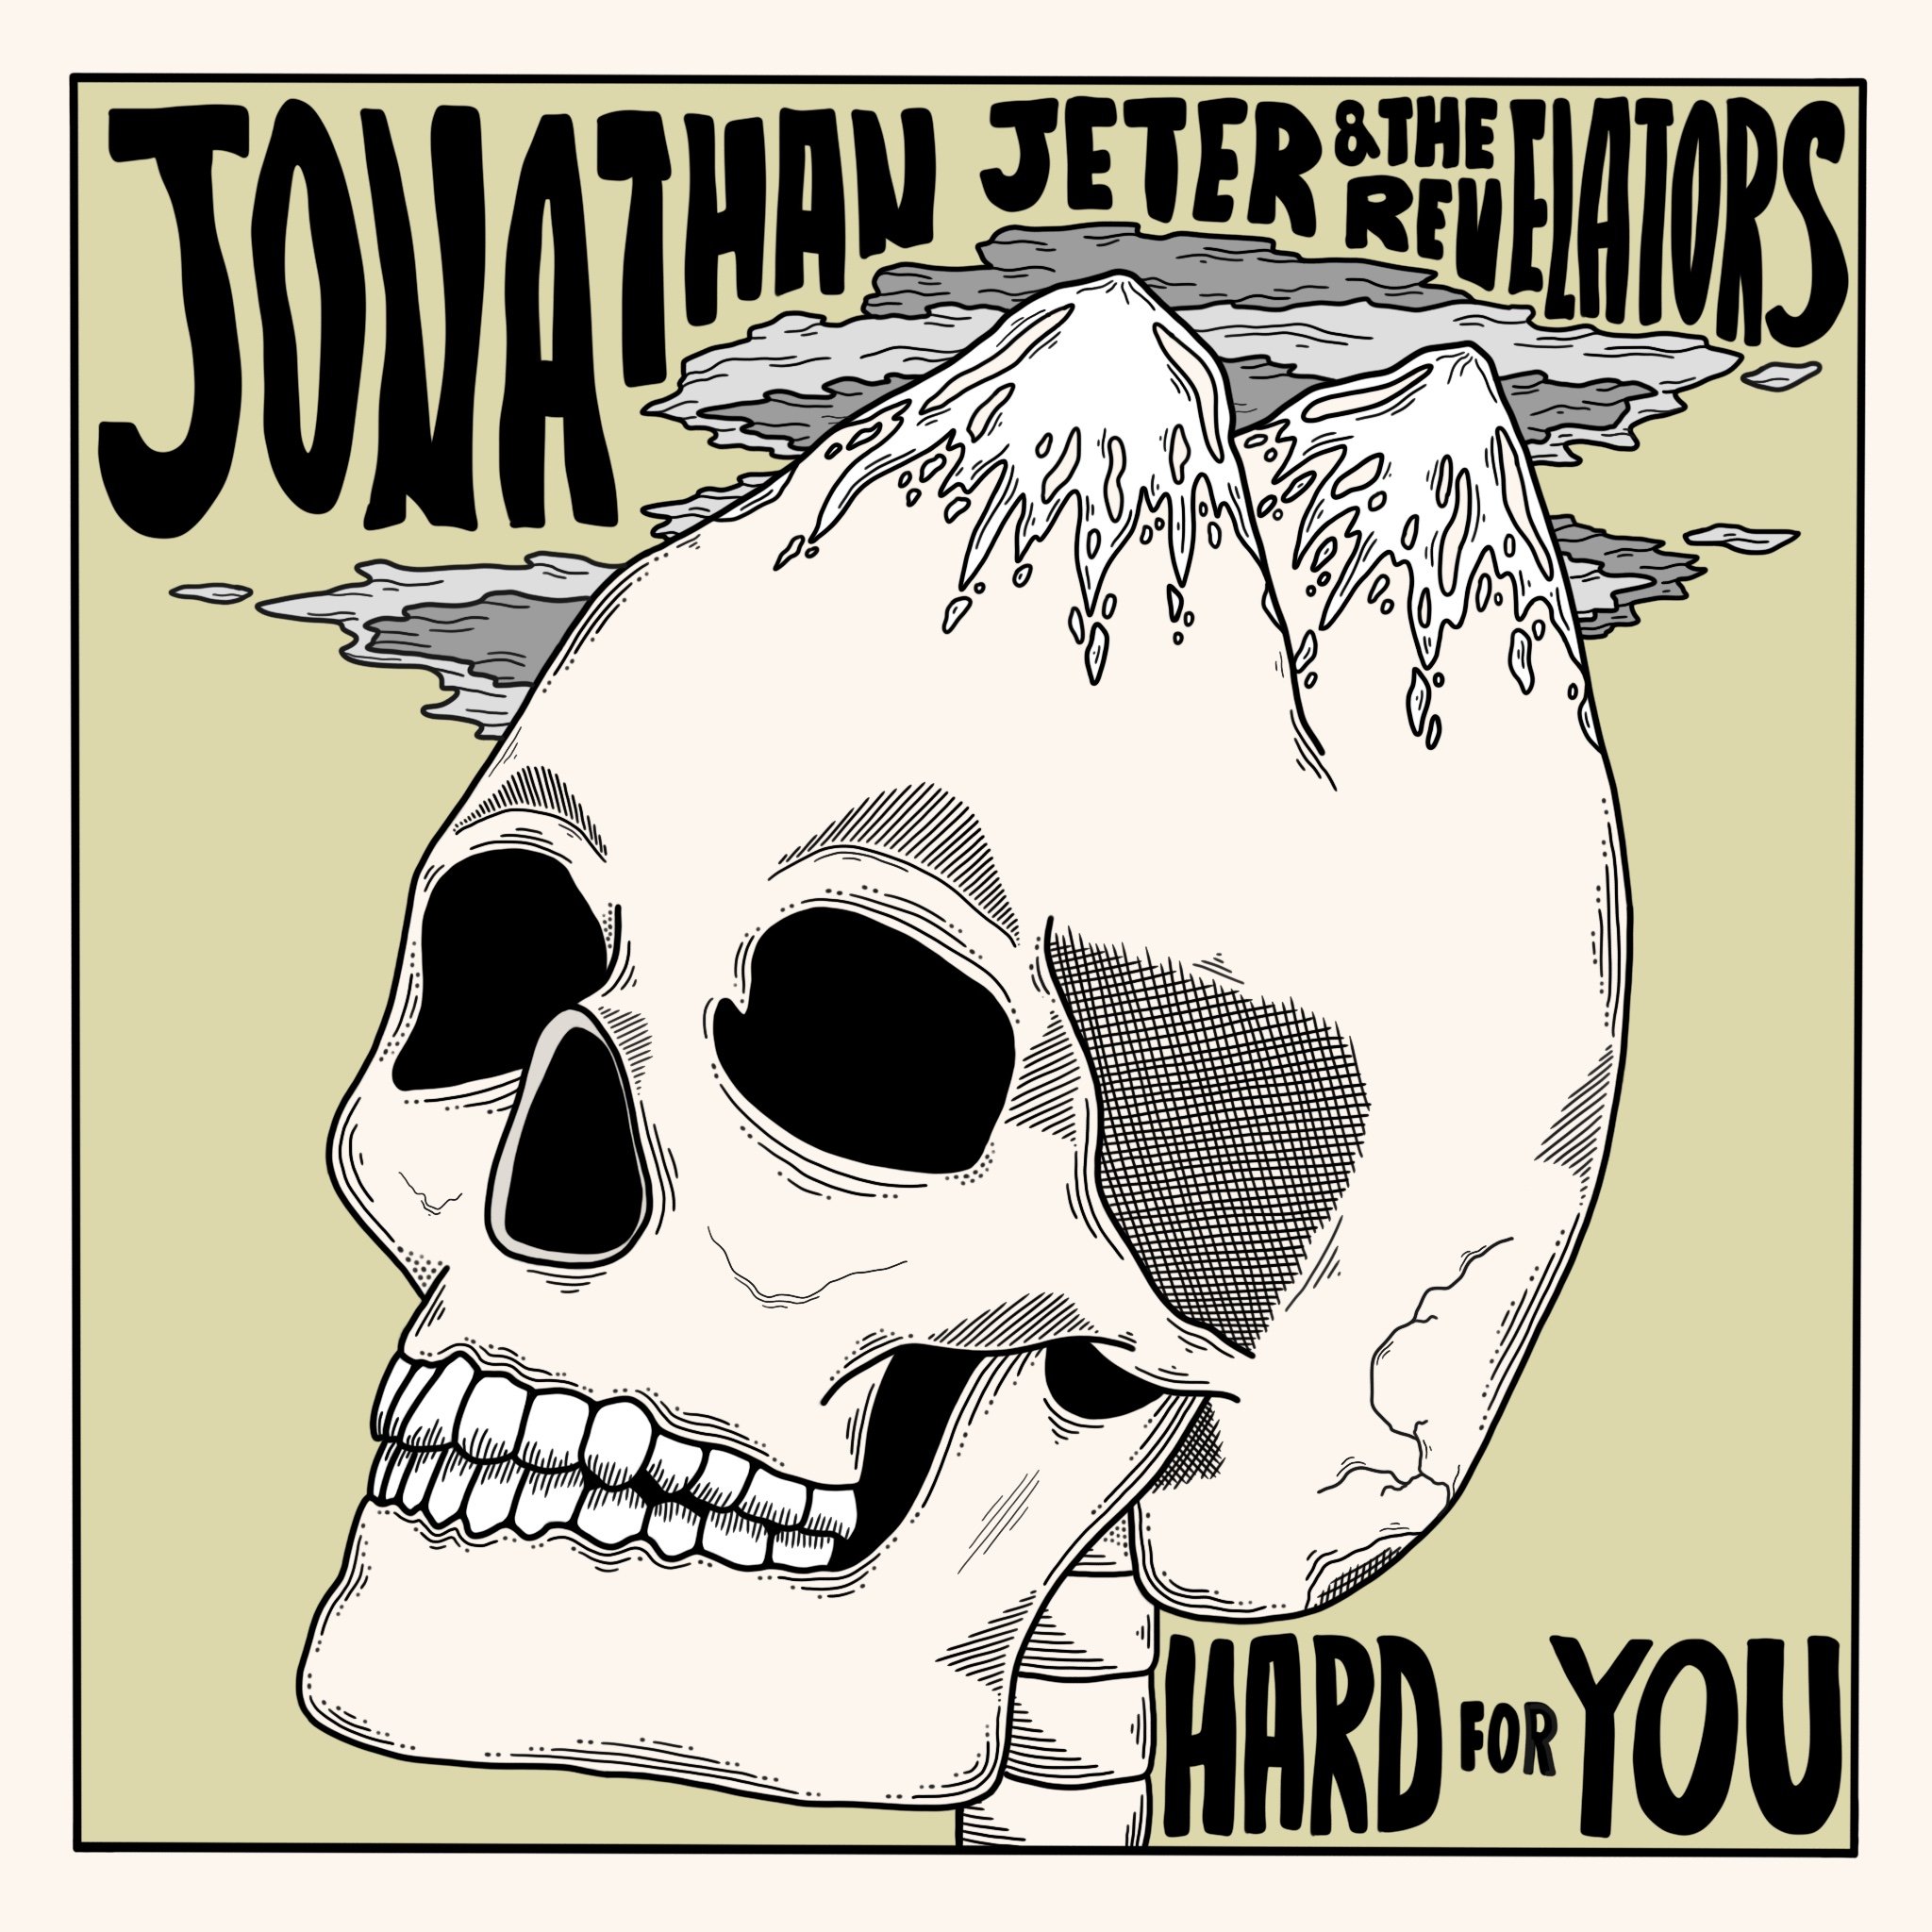 Jonathan Jeter & the Revelators "Hard For You" Single Art